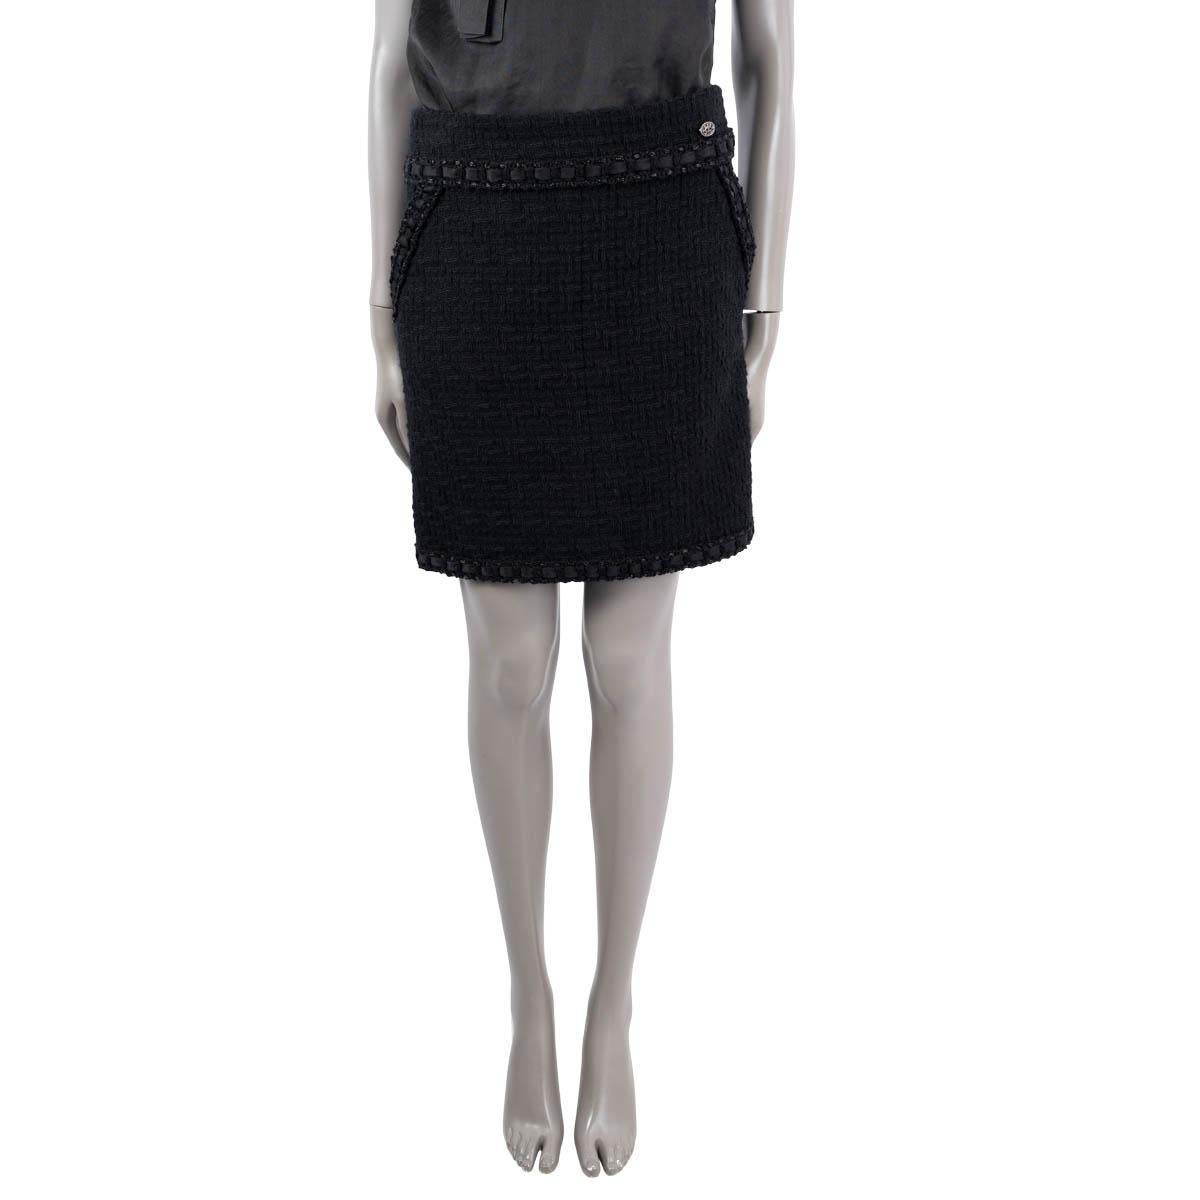 100% authentischer Chanel 2016 Tweed-Minirock aus schwarzer Wolle (100%). Mit einem Satinbandbesatz und zwei schrägen Taschen auf der Vorderseite. Wird mit einem verdeckten Reißverschluss und einem Haken auf der Rückseite geöffnet. Gefüttert mit